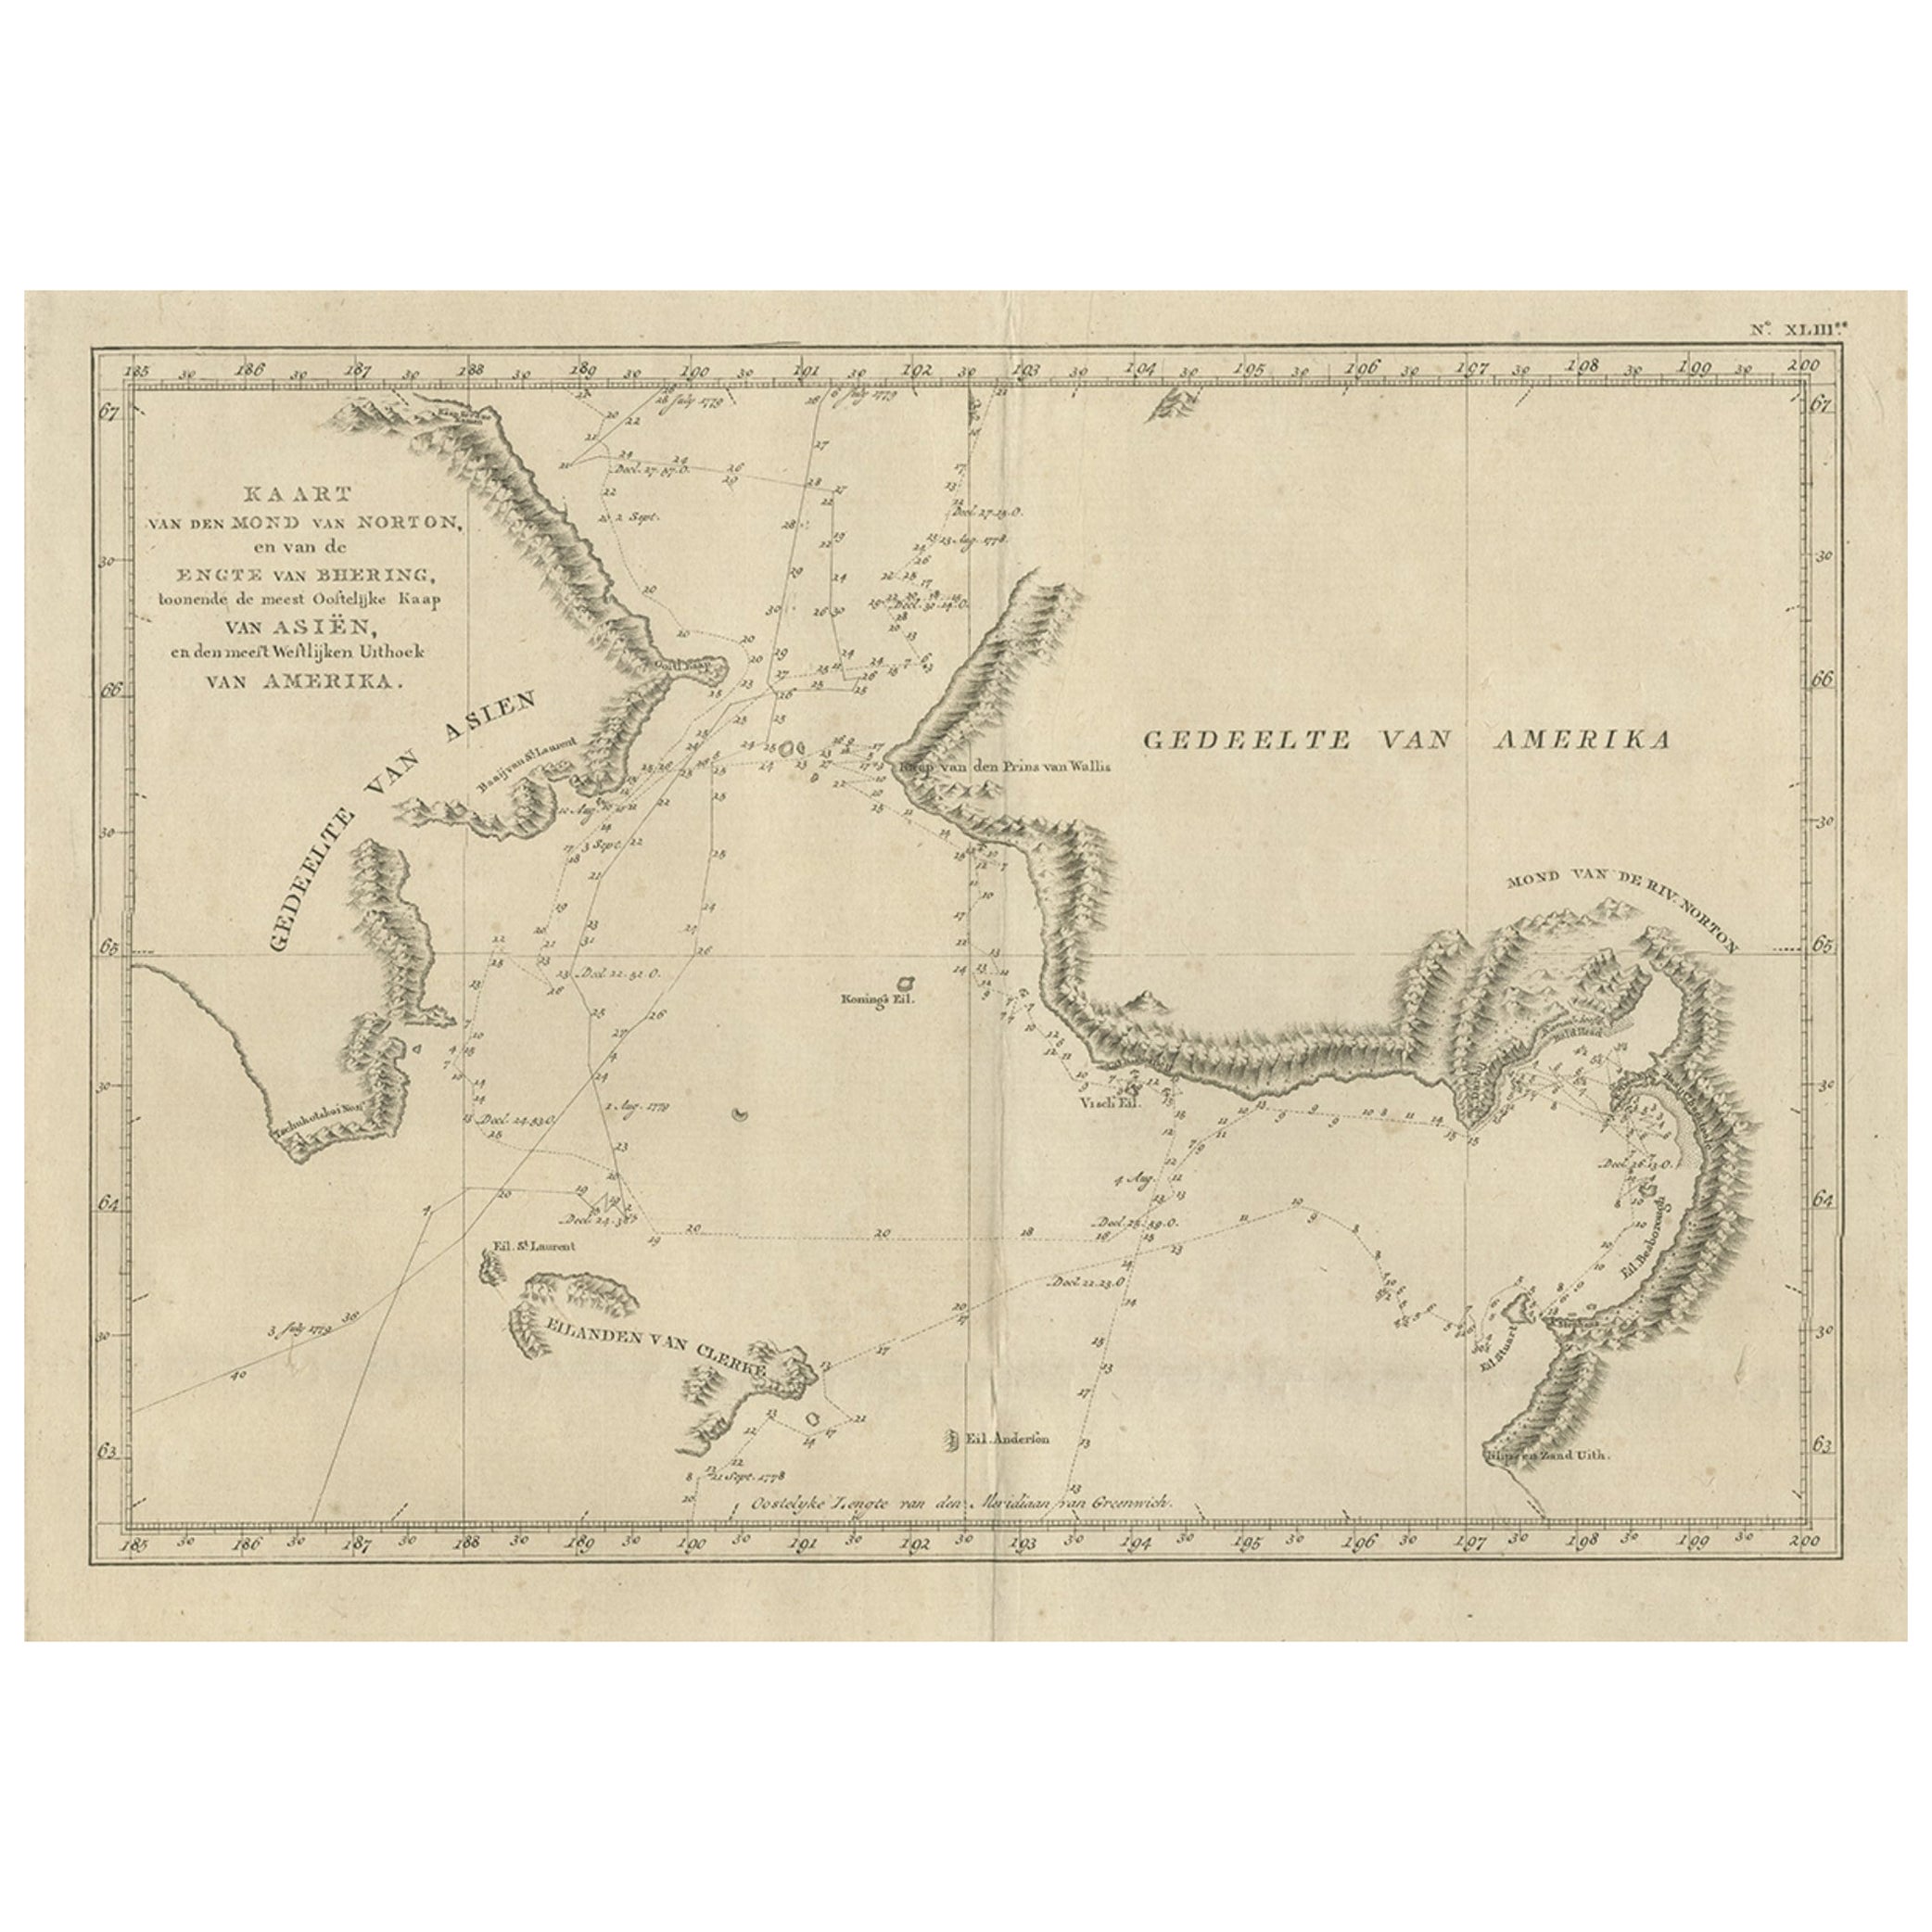 Original Kupfergravierte Originalkarte des Bering Strait von Kapitän Cook, 1803